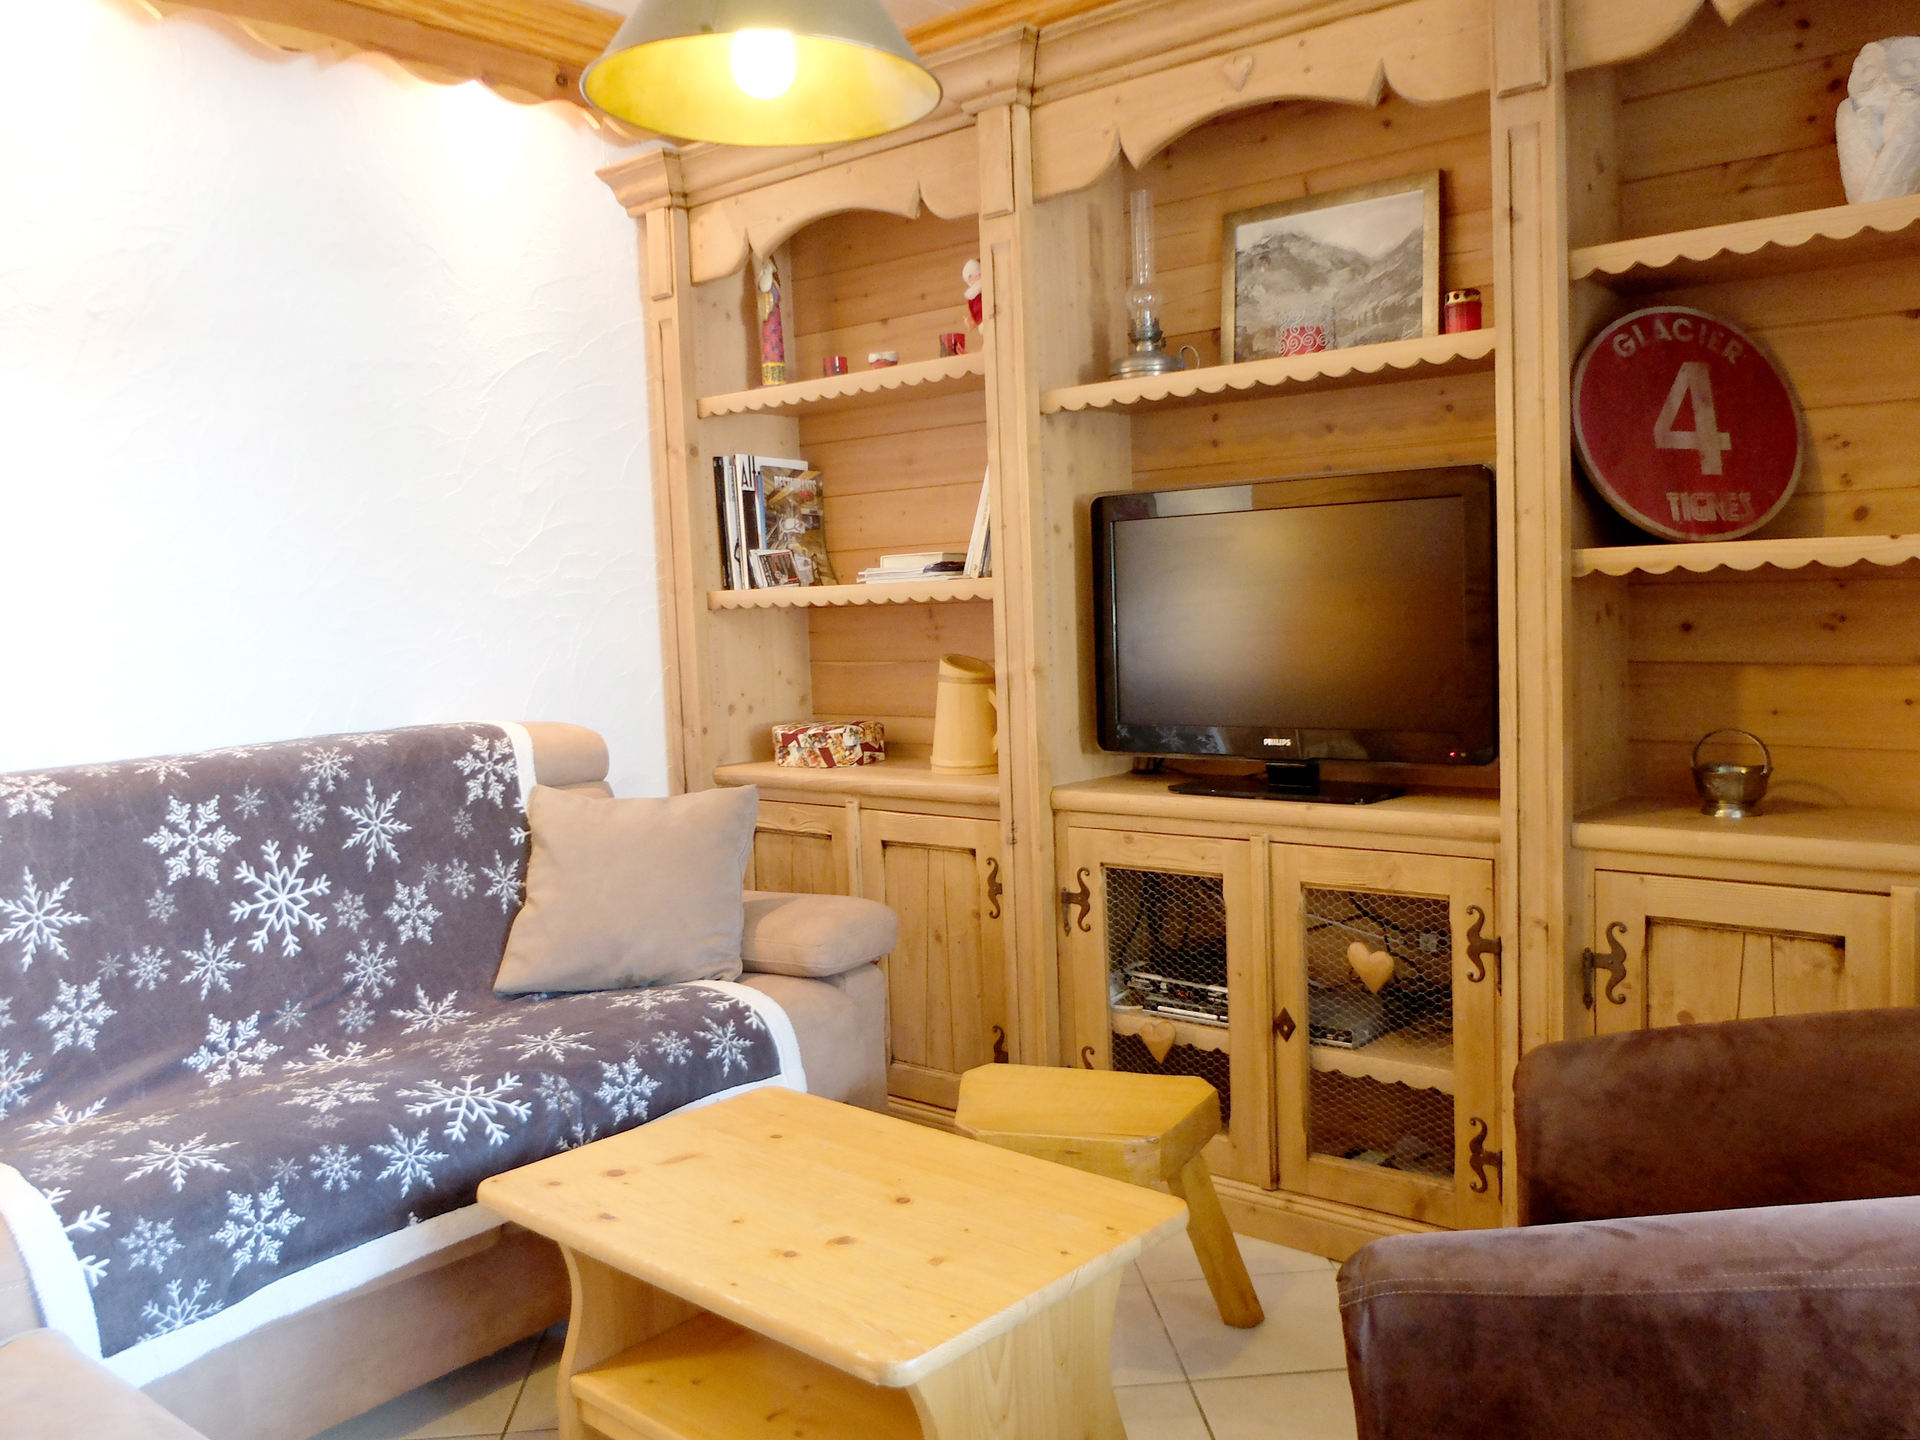 4 rooms 9 people - travelski home choice - Apartements HAMEAU DE TOVIERE - Tignes 2100 Le Lavachet